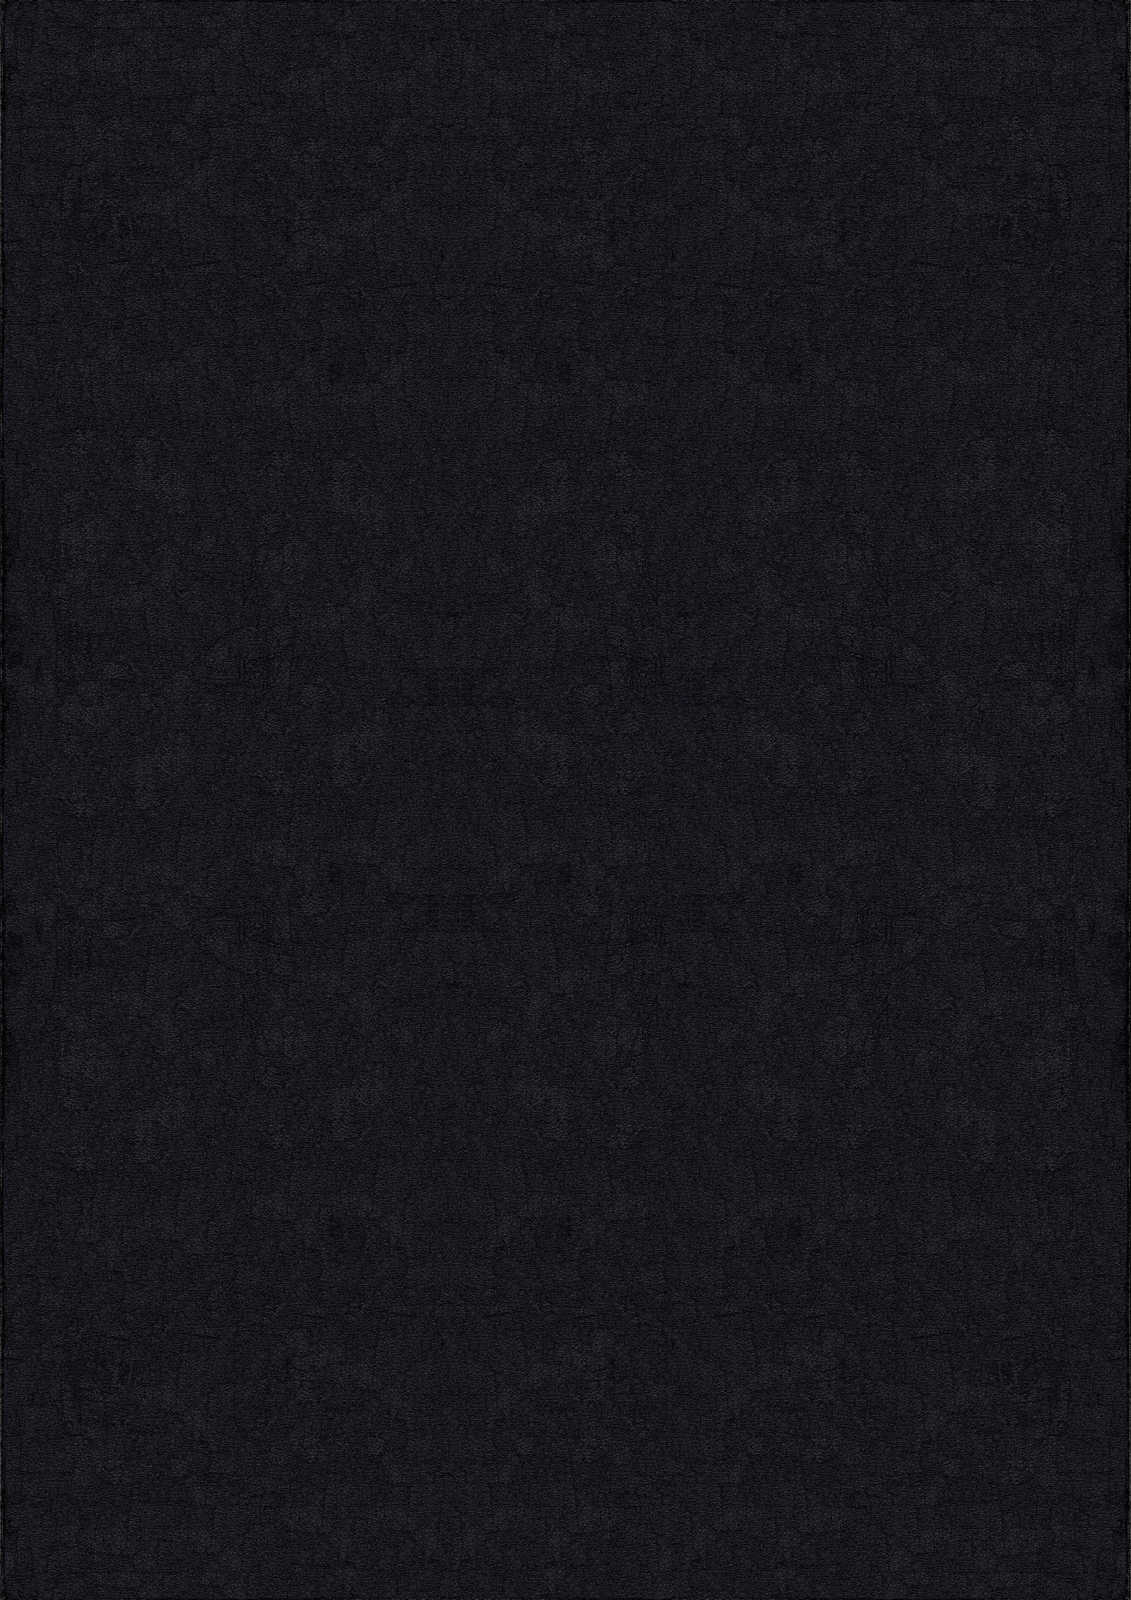             Fluweelzacht hoogpolig tapijt in zwart - 170 x 120 cm
        